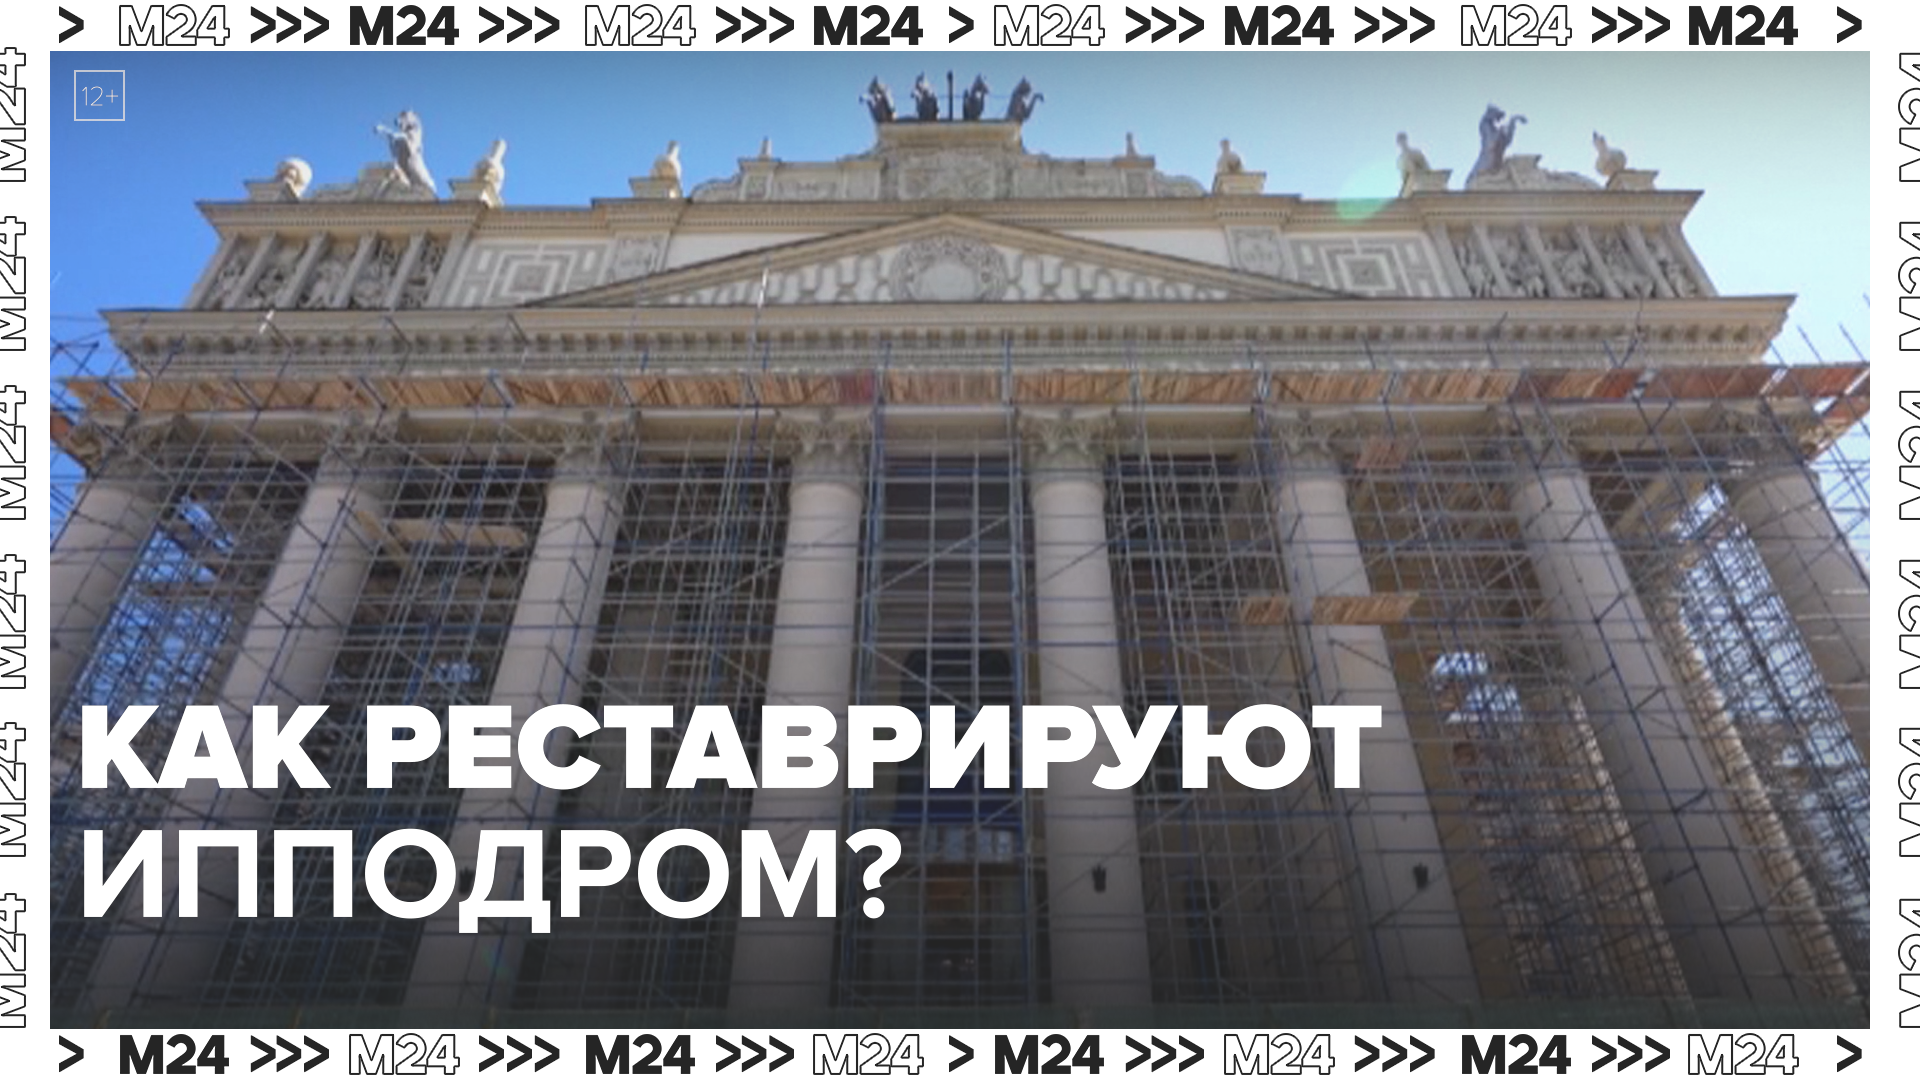 Как реставрируют центральный ипподром? — Москва24|Контент